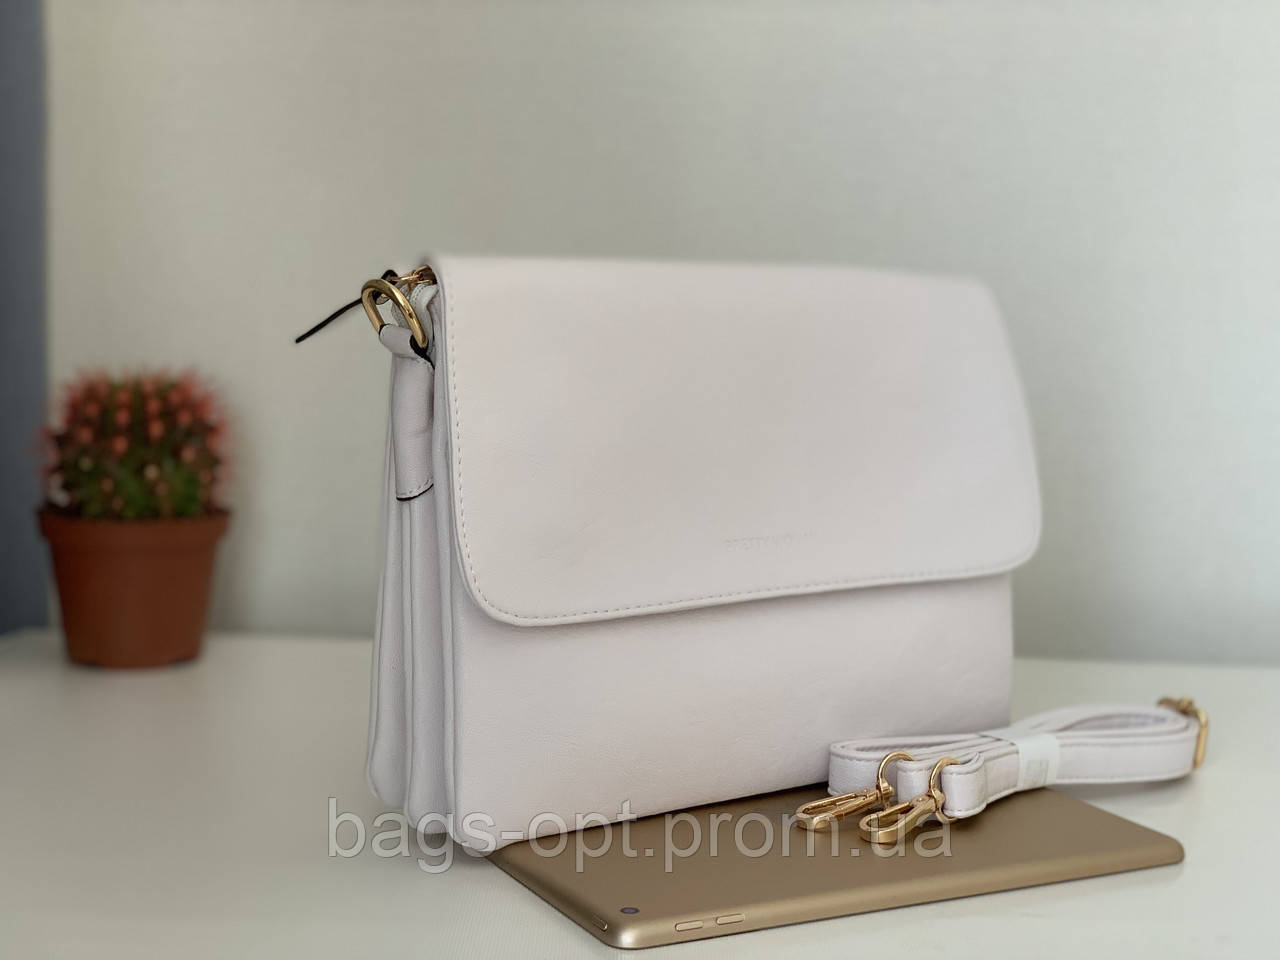 Біла жіноча сумочка клатч-конверт через плече Pretty Woman Одеса 7 км, фото 1